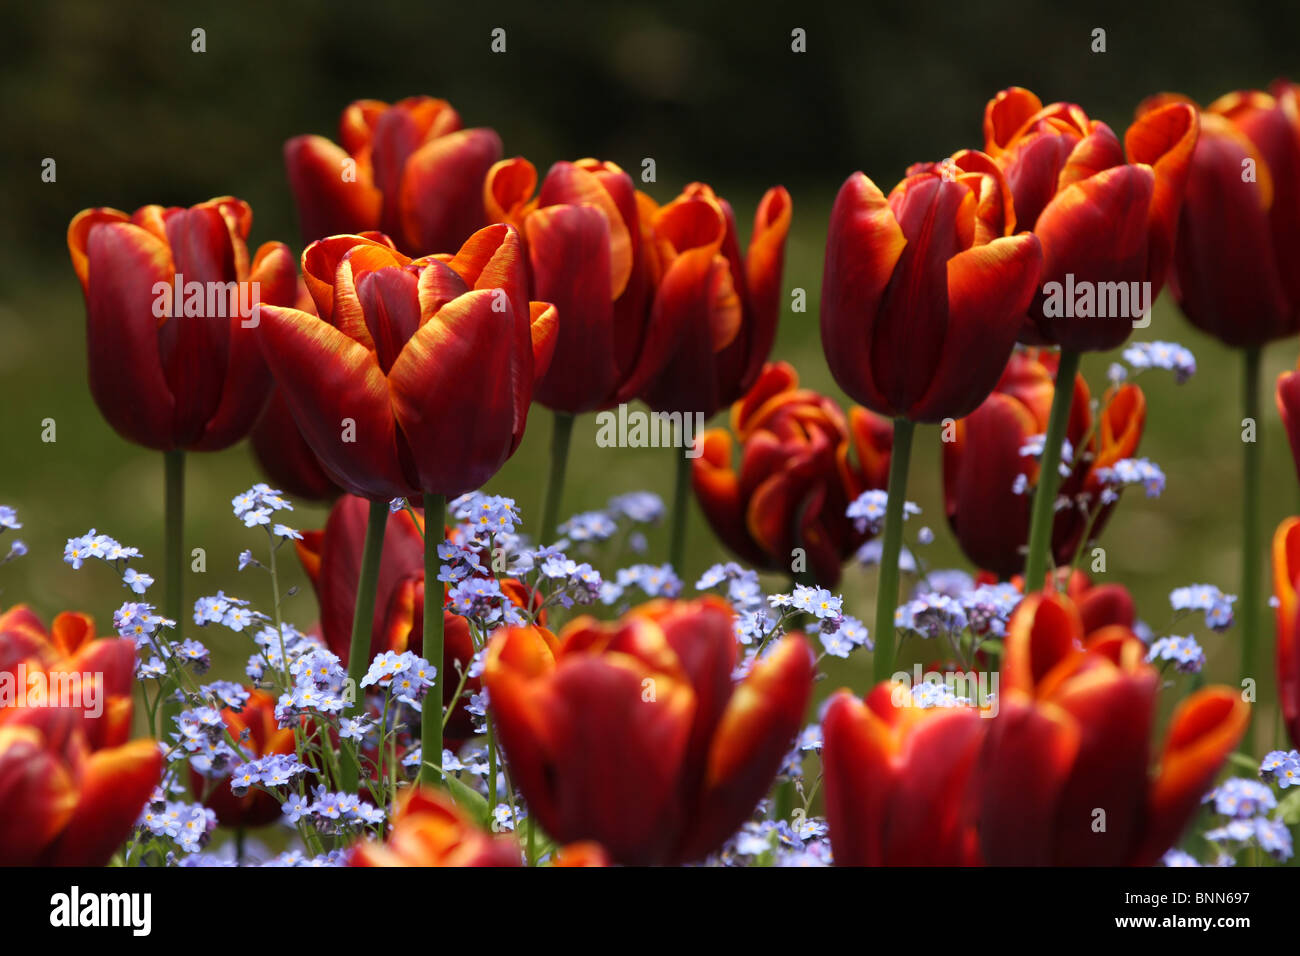 De nombreuses tulipes rouge vif avec du jaune sur le bord des pétales et ne m'oubliez pas les fleurs. Banque D'Images